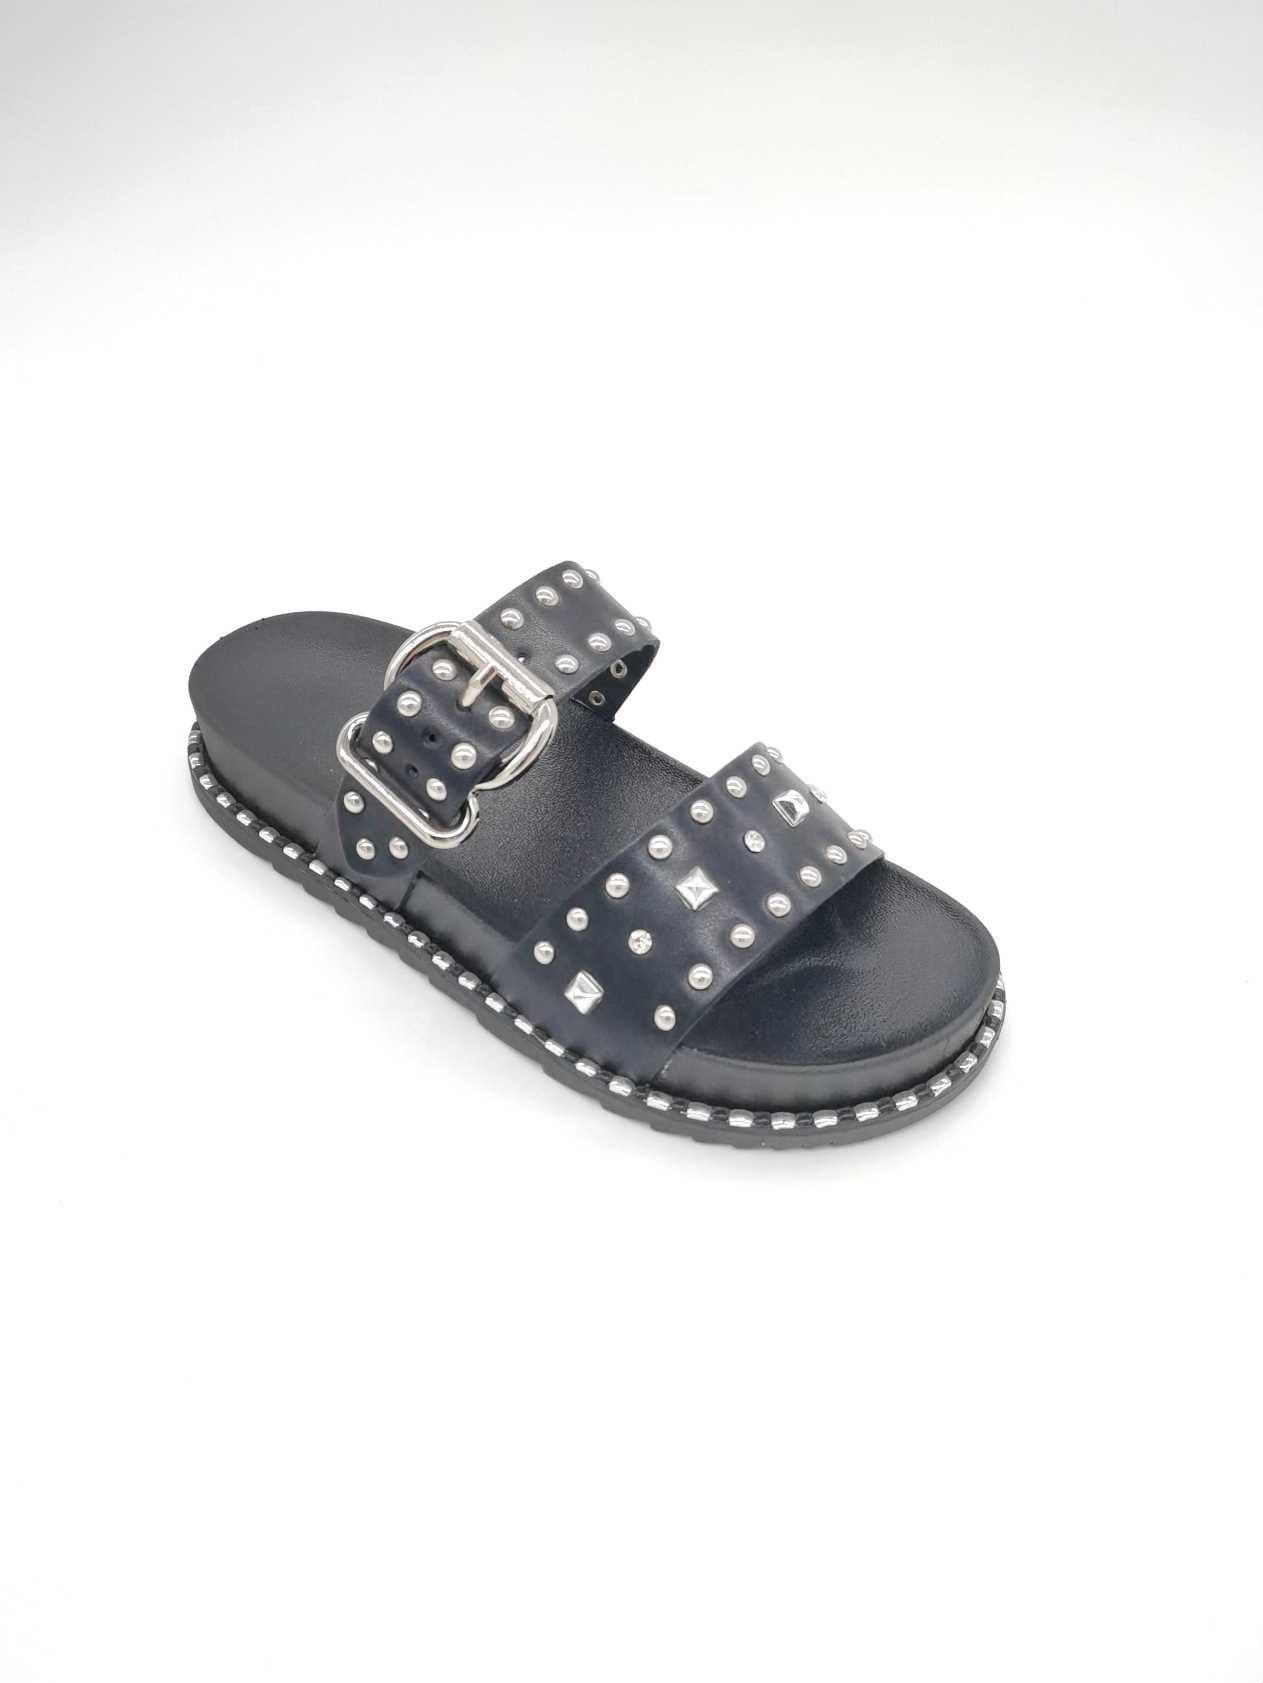 Sandalias Zapatos Black MULANKA 910 #c Efashion Paris